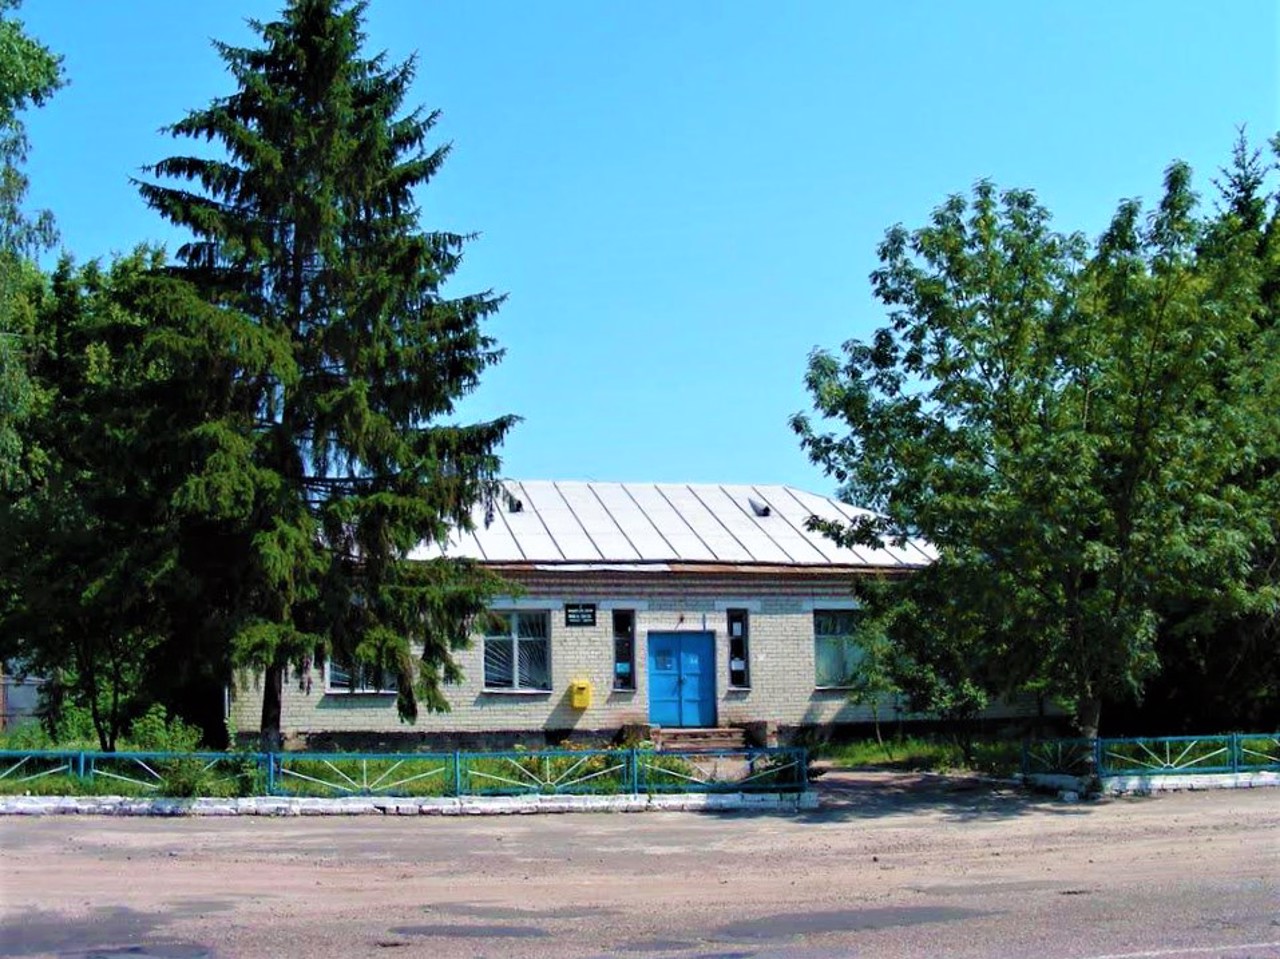 Vertiivka village, Chernihiv region